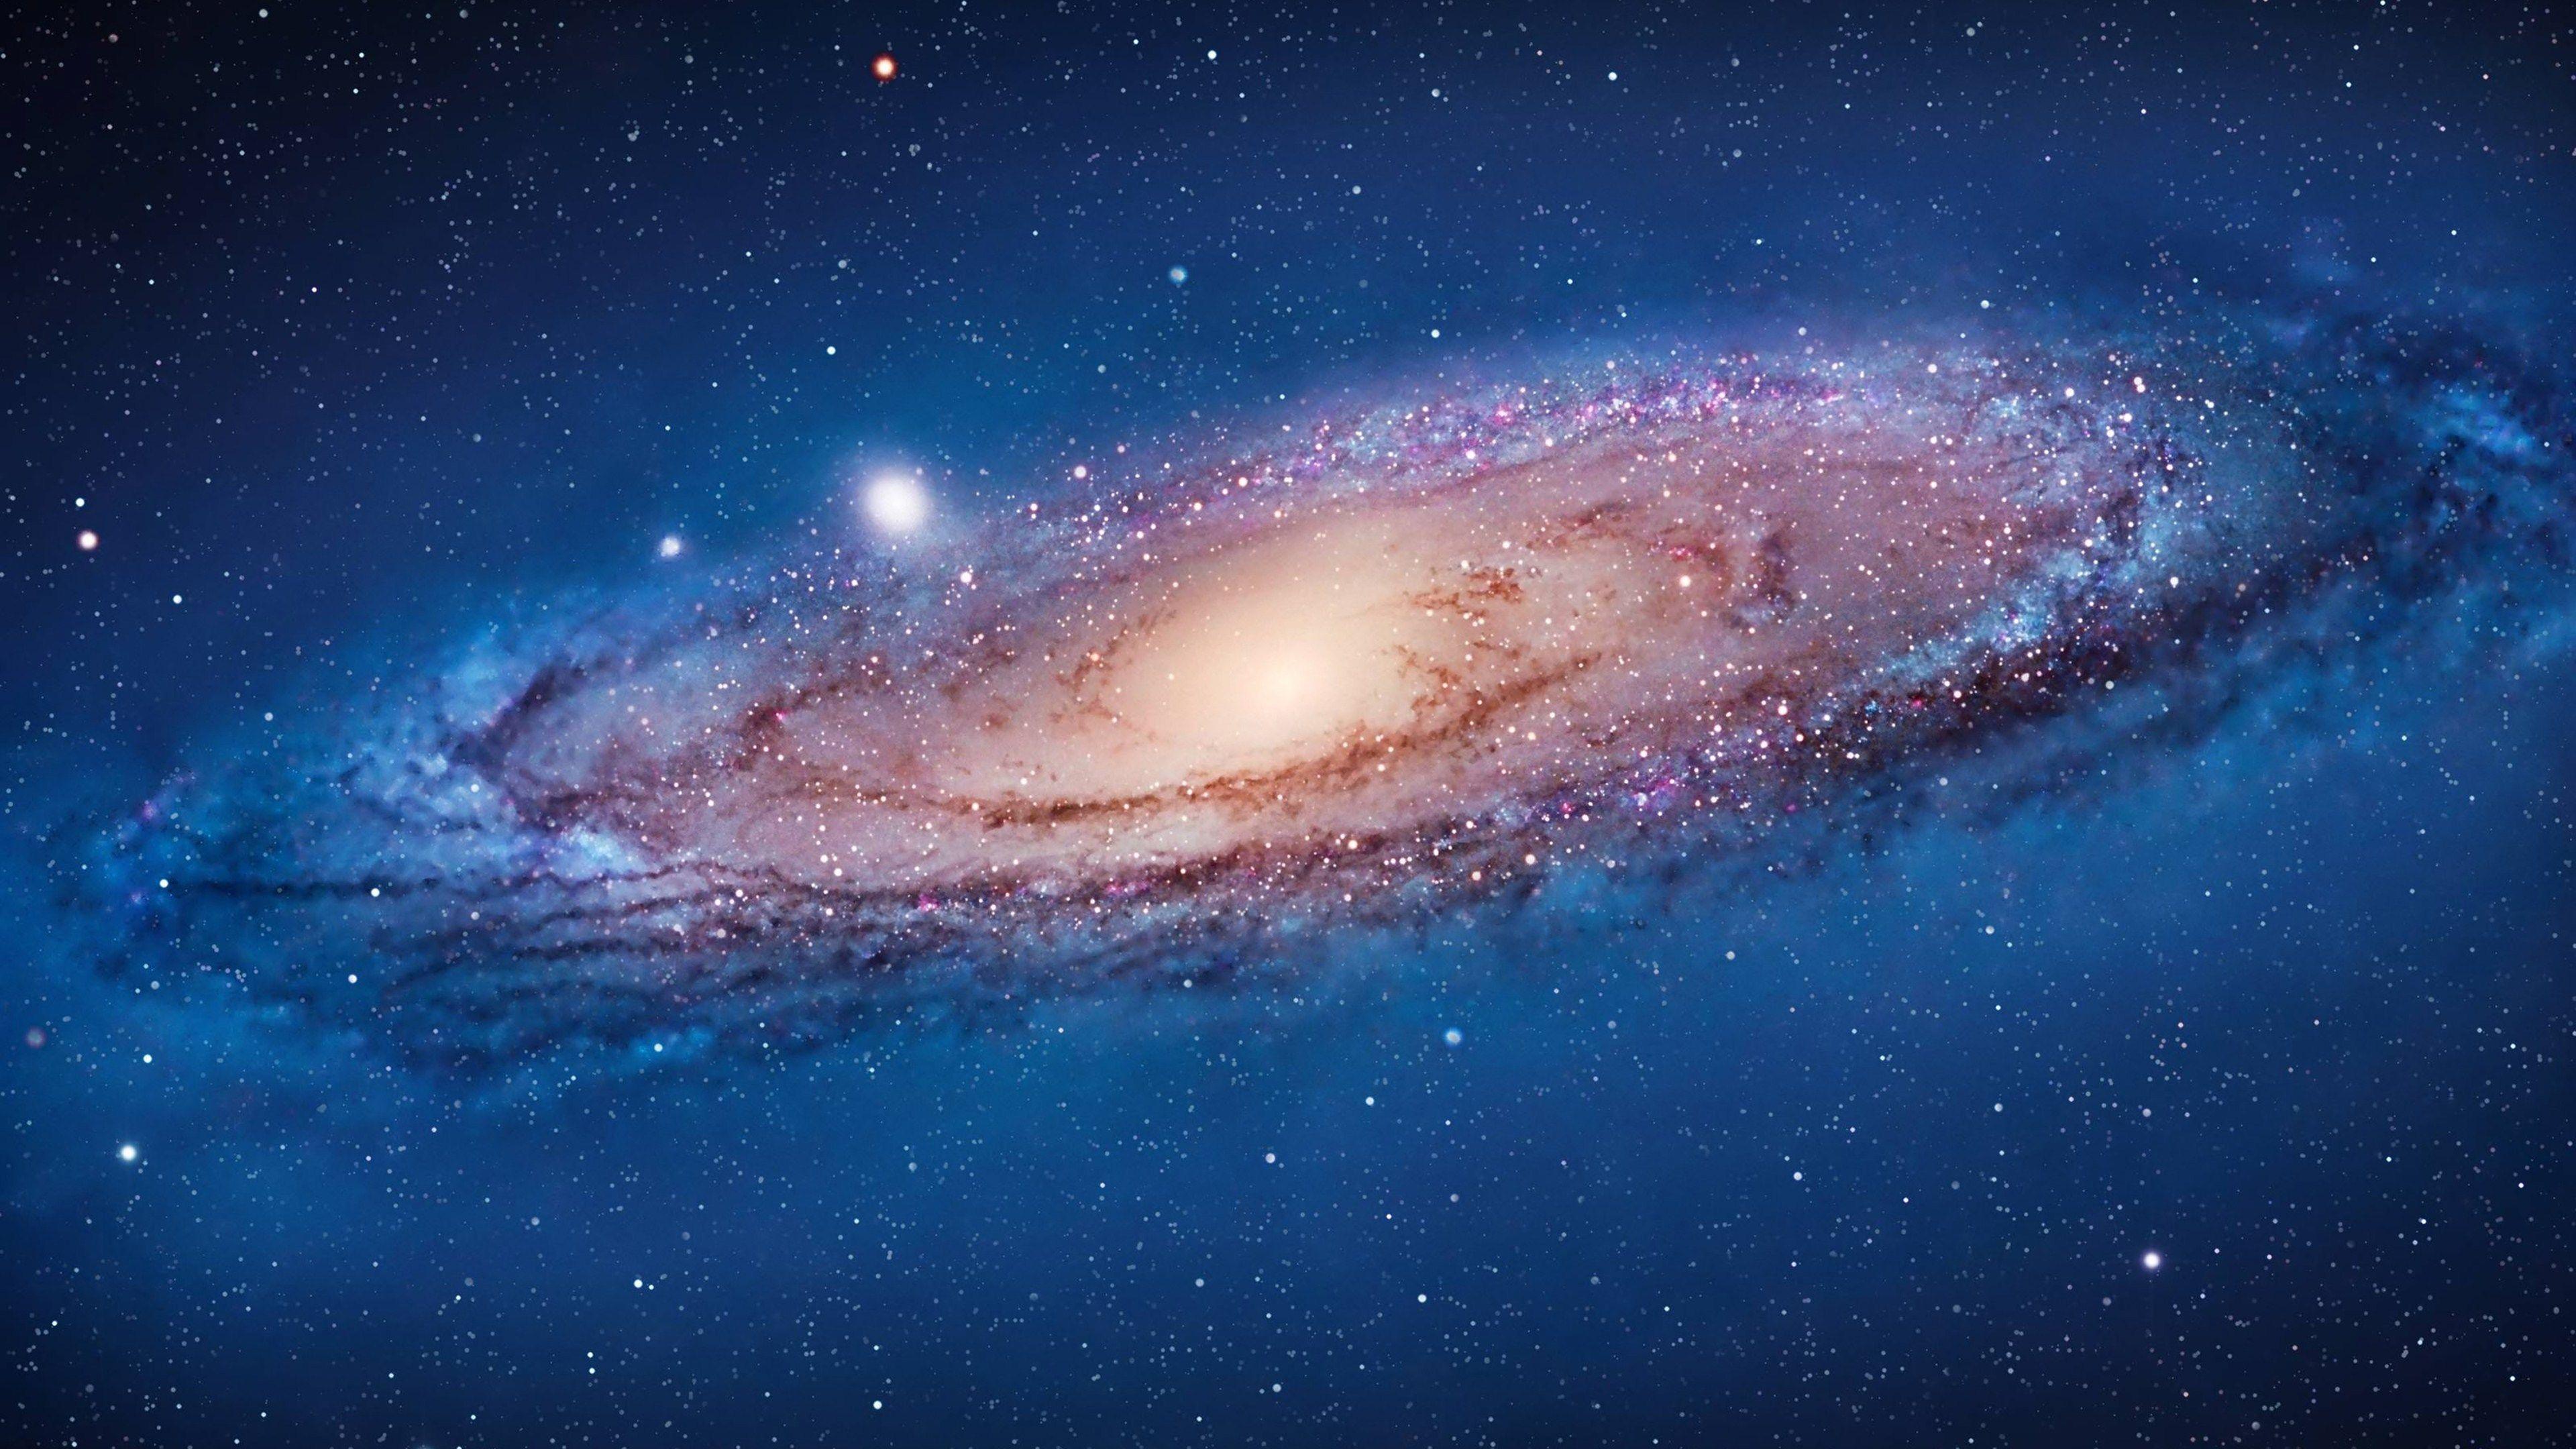 Thiên hà Ngân Hà luôn được coi là một trong những điều kỳ diệu nhất của vũ trụ. Hãy xem ngay tấm ảnh nền Ngân Hà để thấy sự tuyệt vời của nó đang chờ đợi bạn.